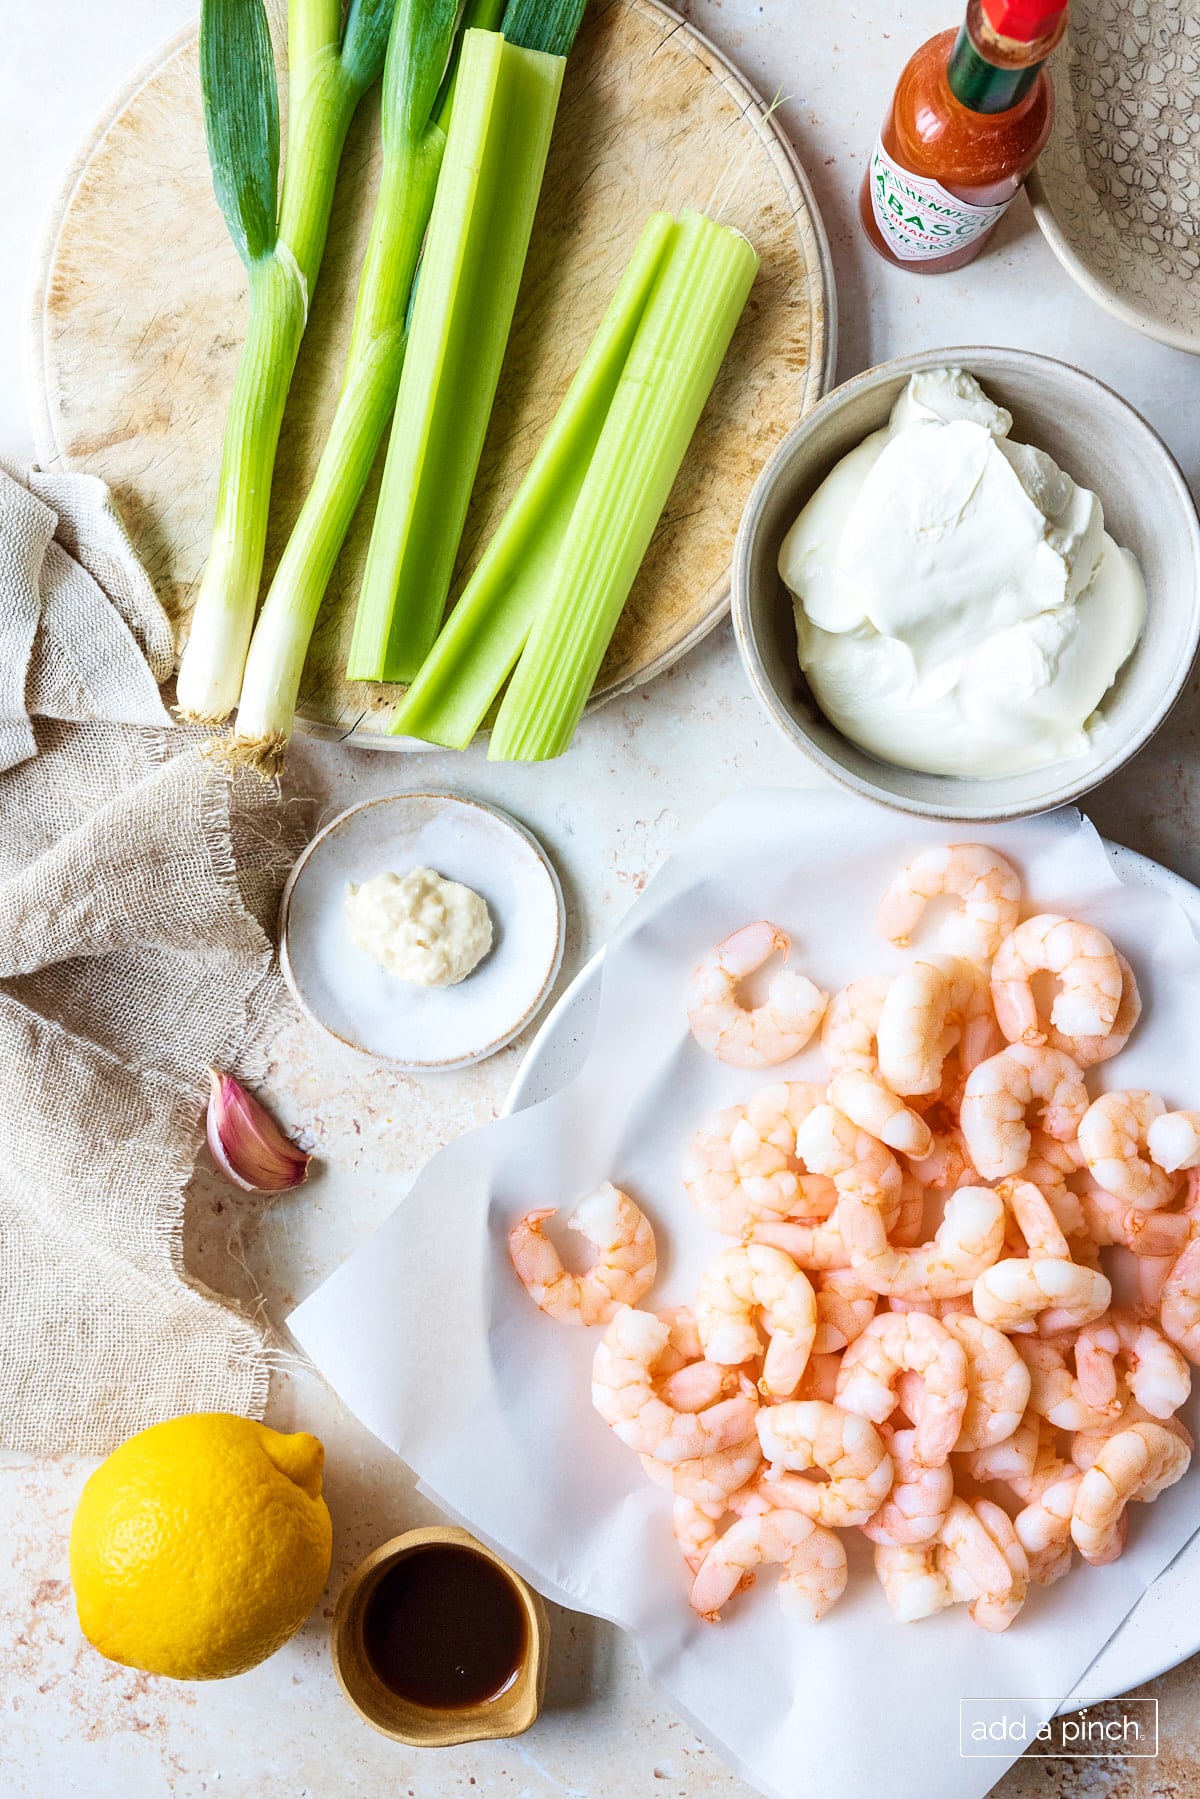 Ingredients used to make shrimp dip recipe.